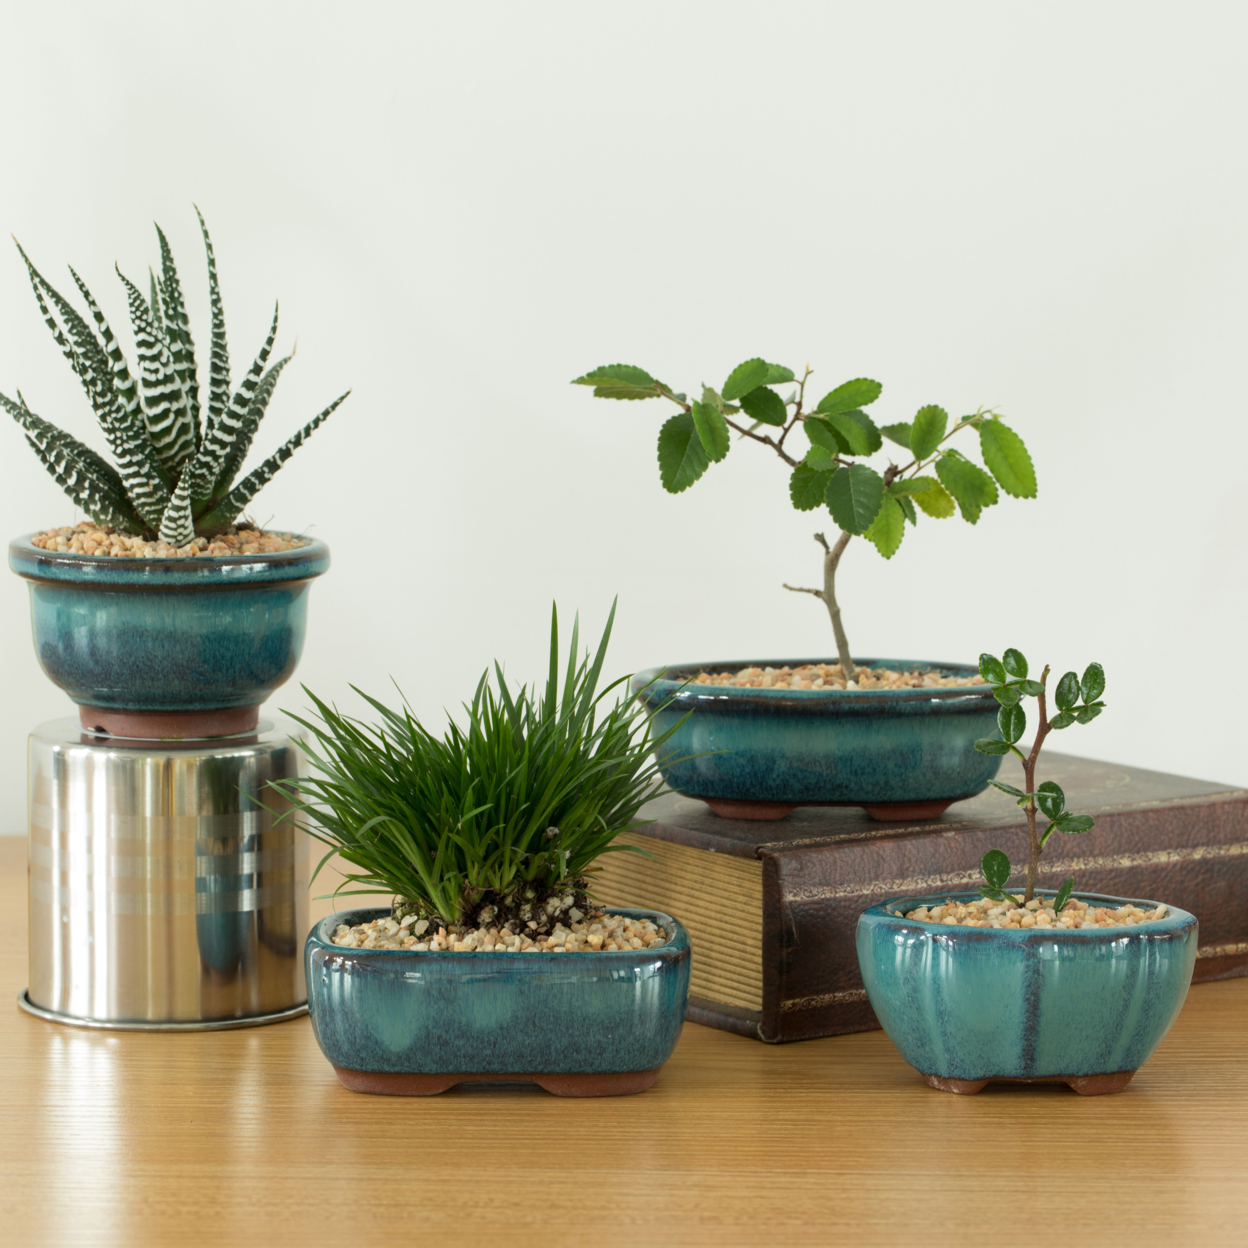 Decorative Mini Glazed Ceramic Bonsai Succulent Pots Flower Planter With Drainage Holes, 4 Pack